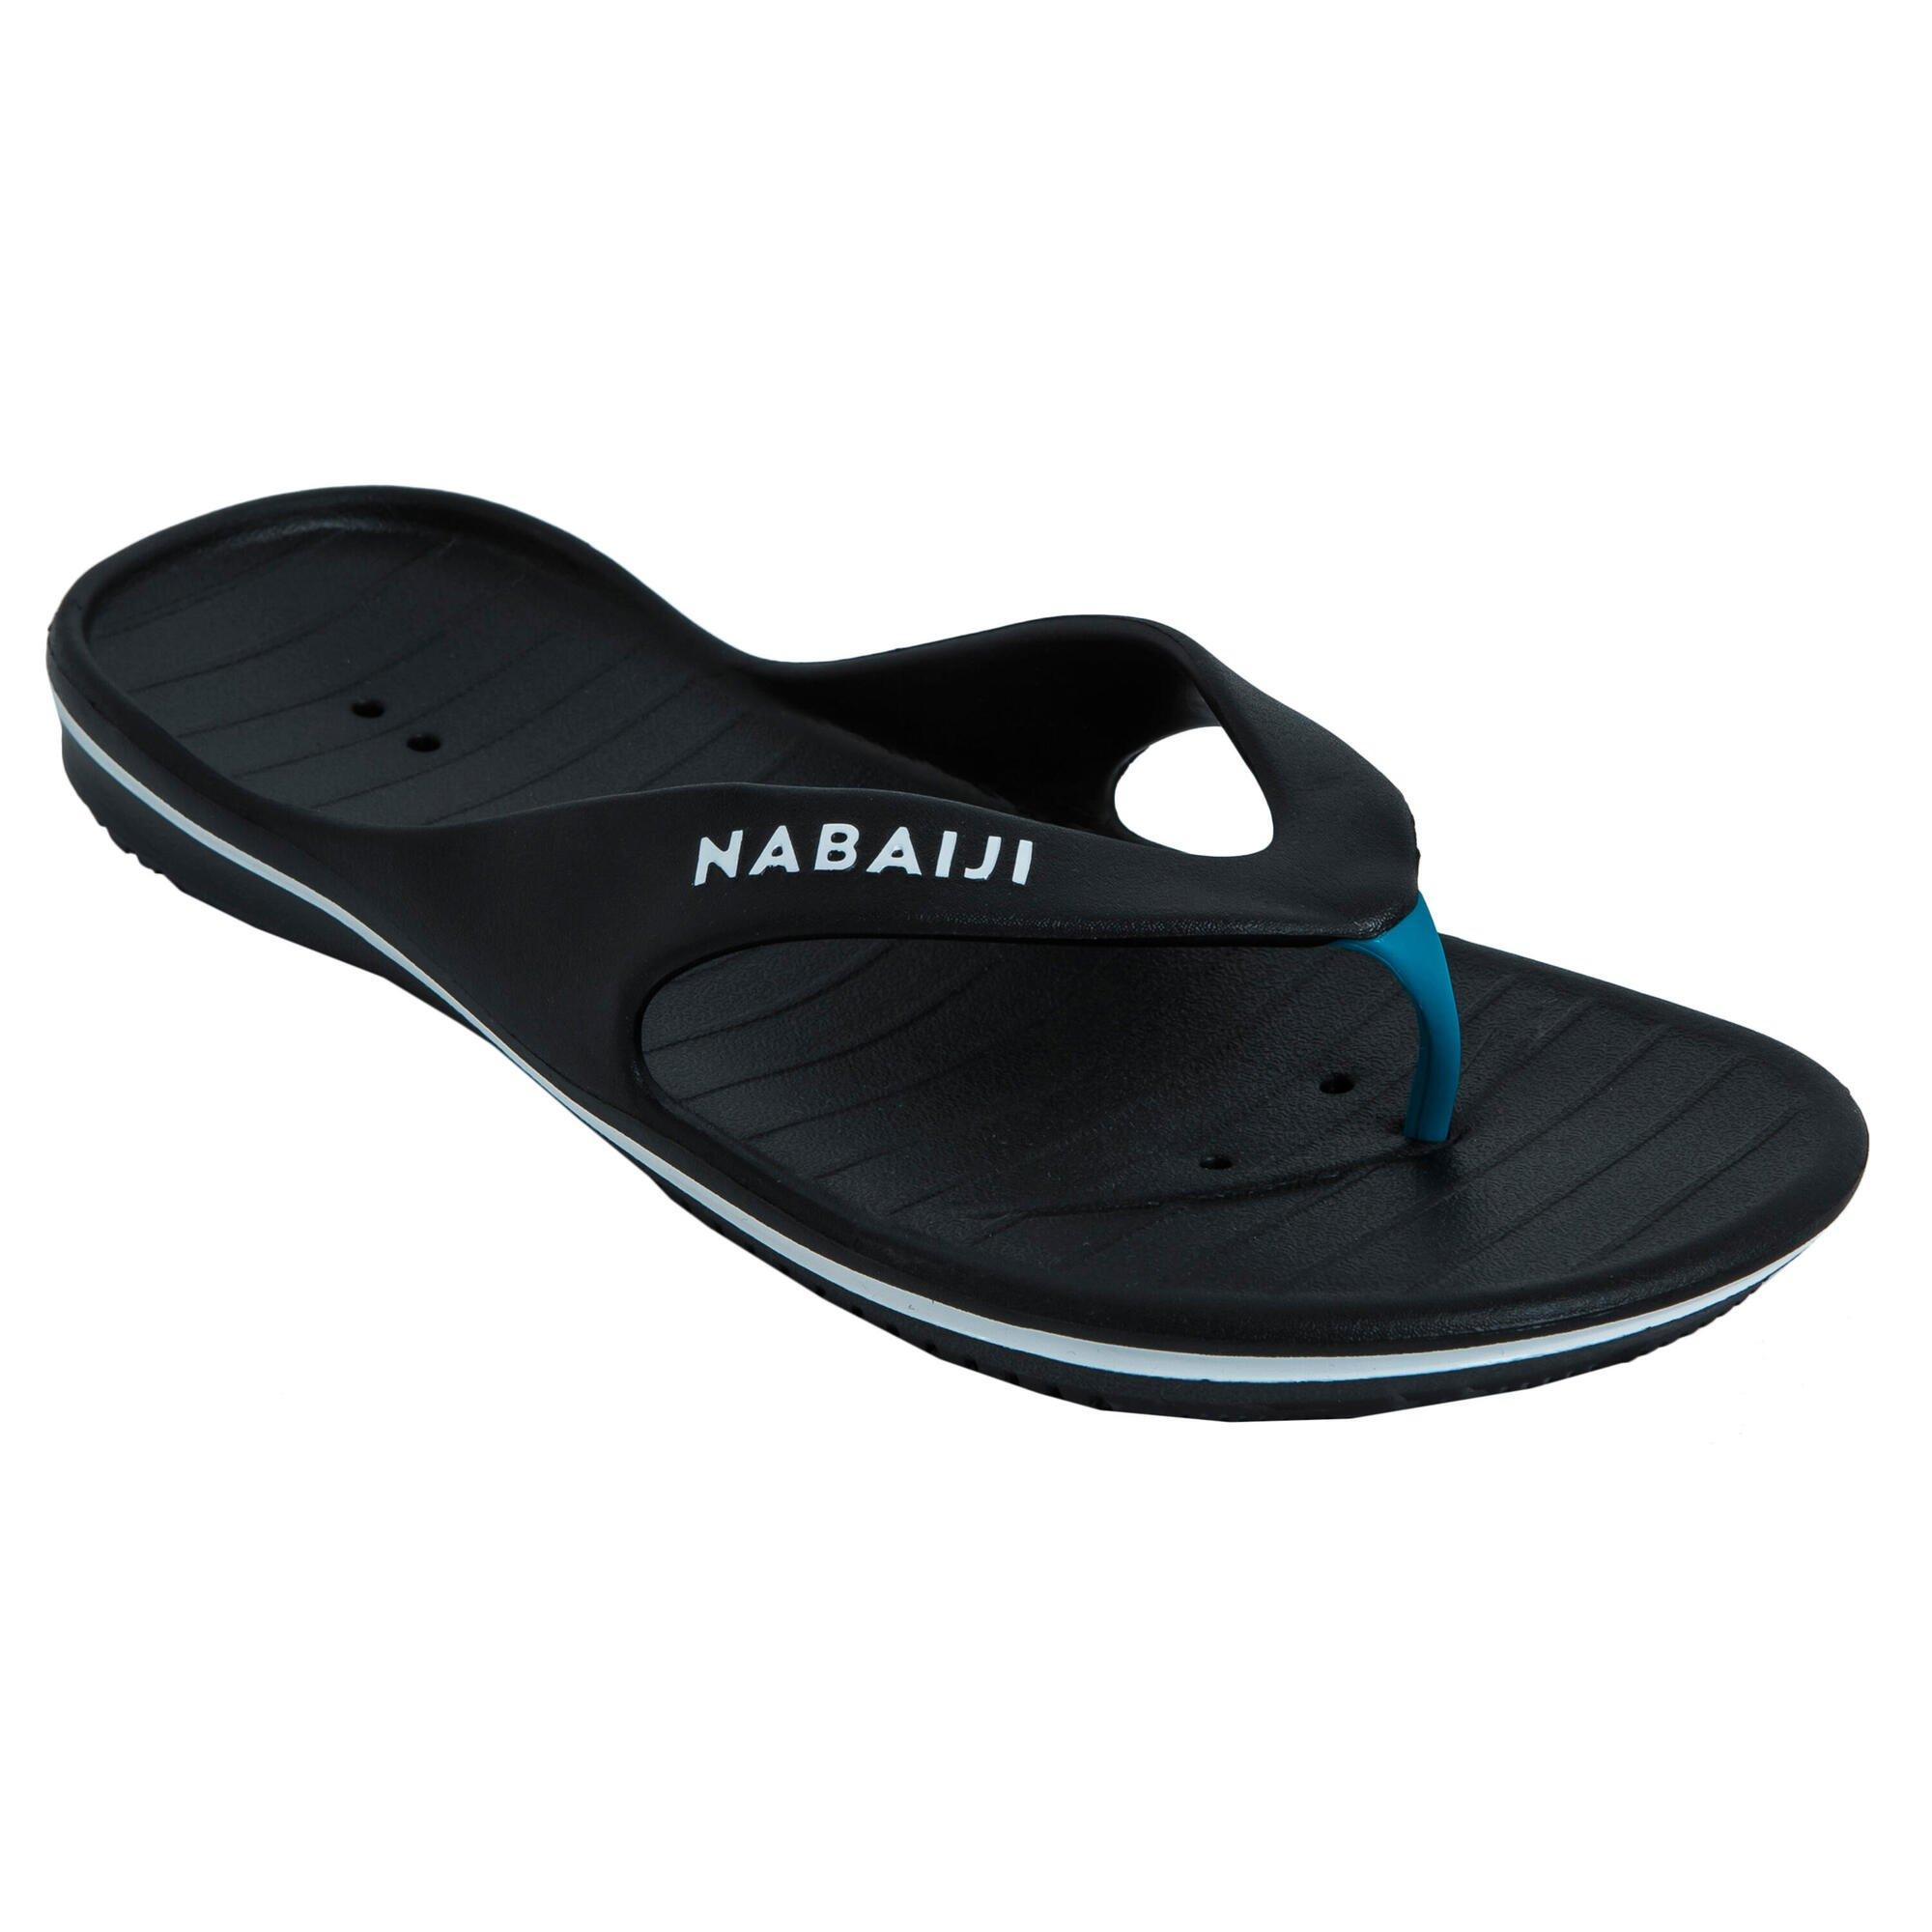 Sports Footwear Decathlon Pool Flip Flops Tonga 500 Nabaiji